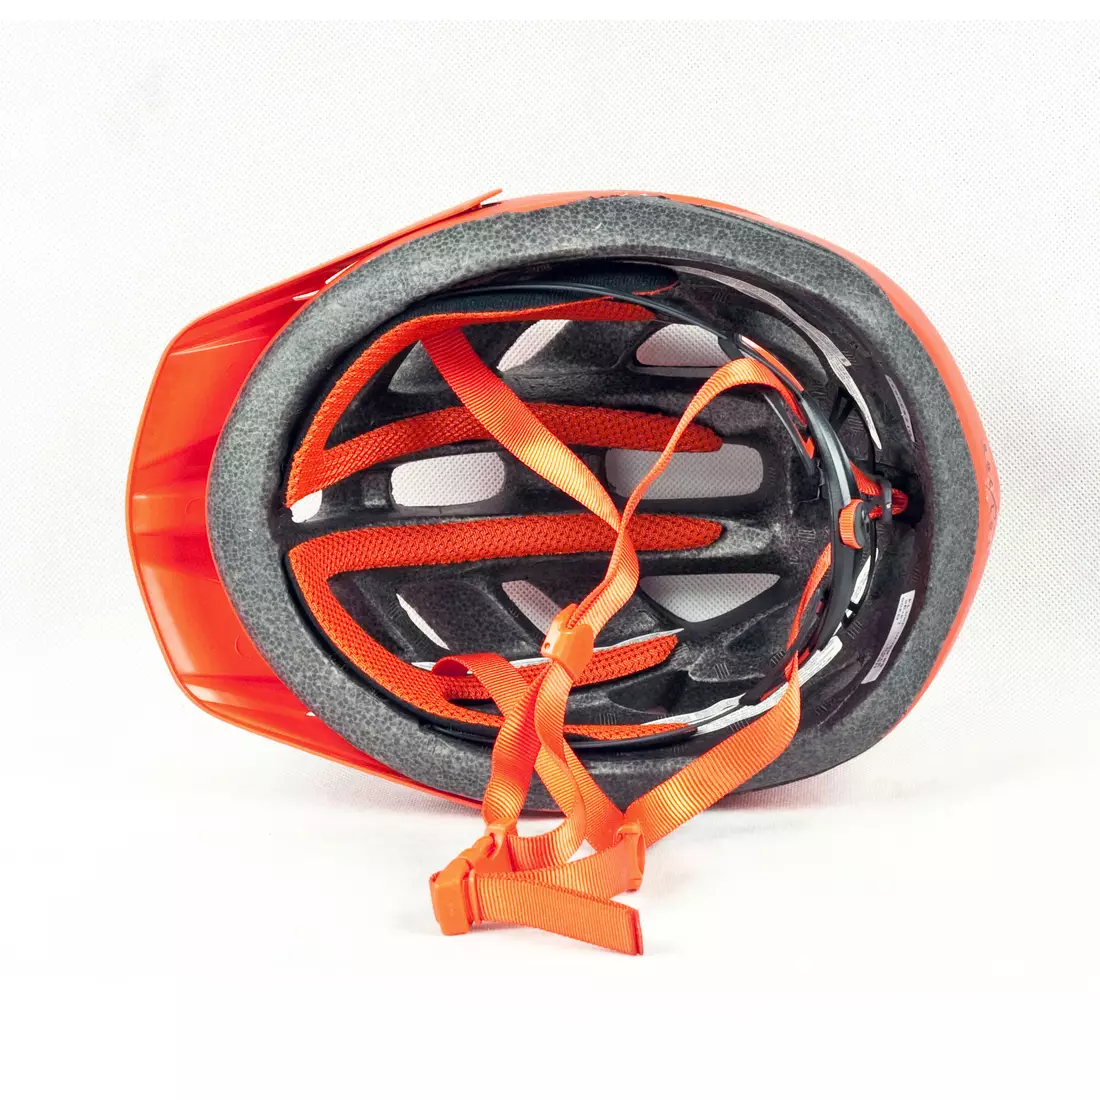 GIRO HEX - bicycle helmet, red matte